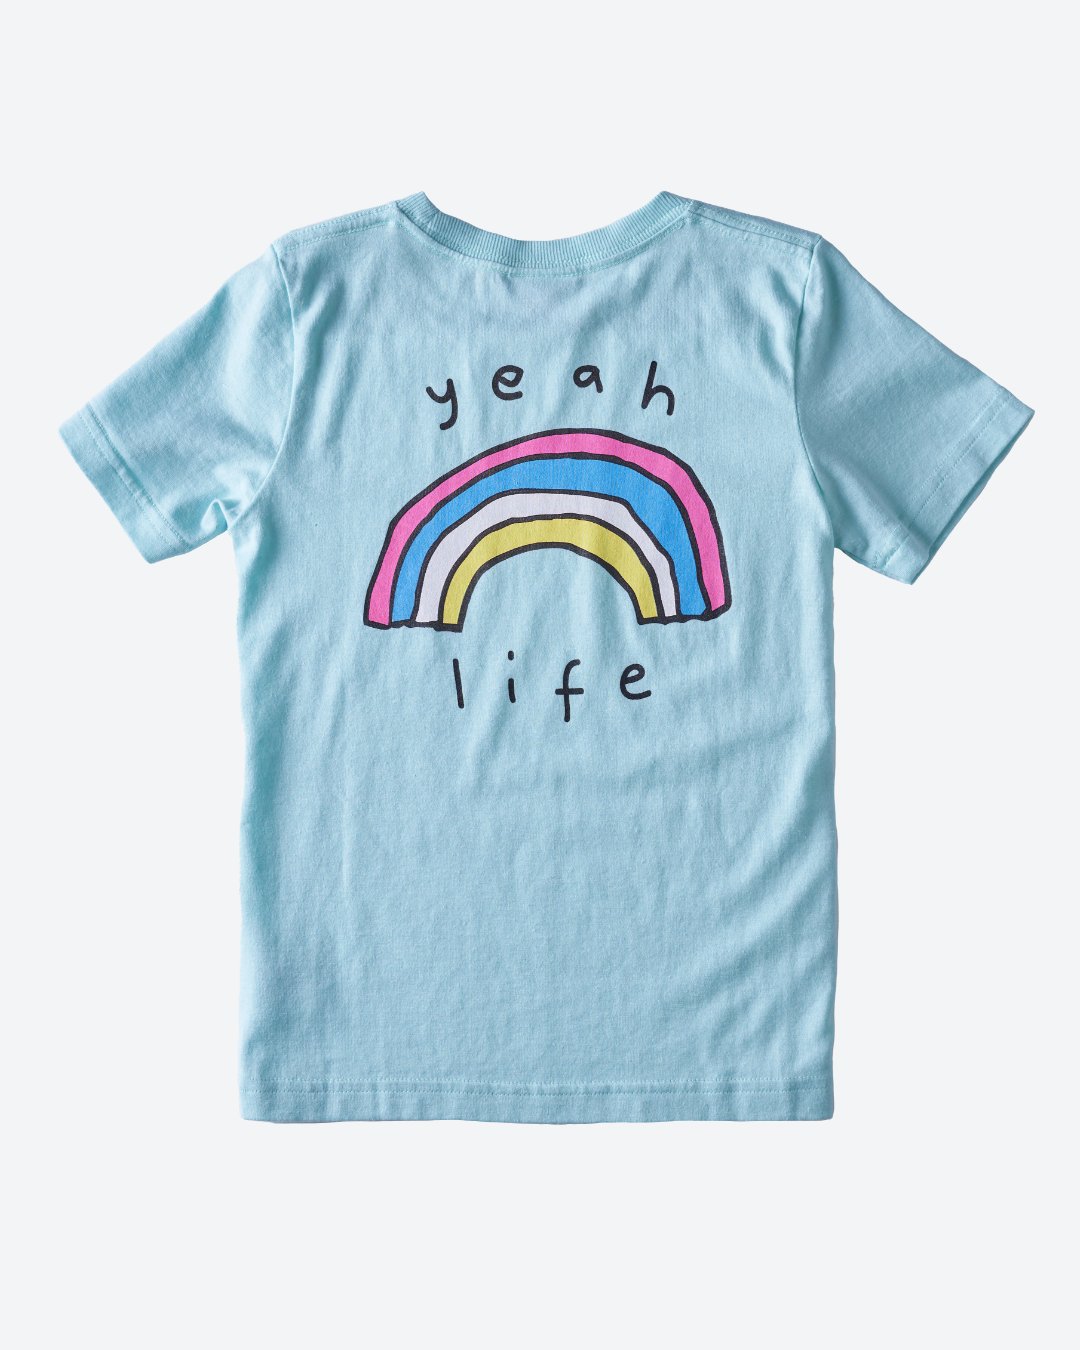 YEAH LIFE Aqua Kids Hemp Organic Cotton T-Shirt